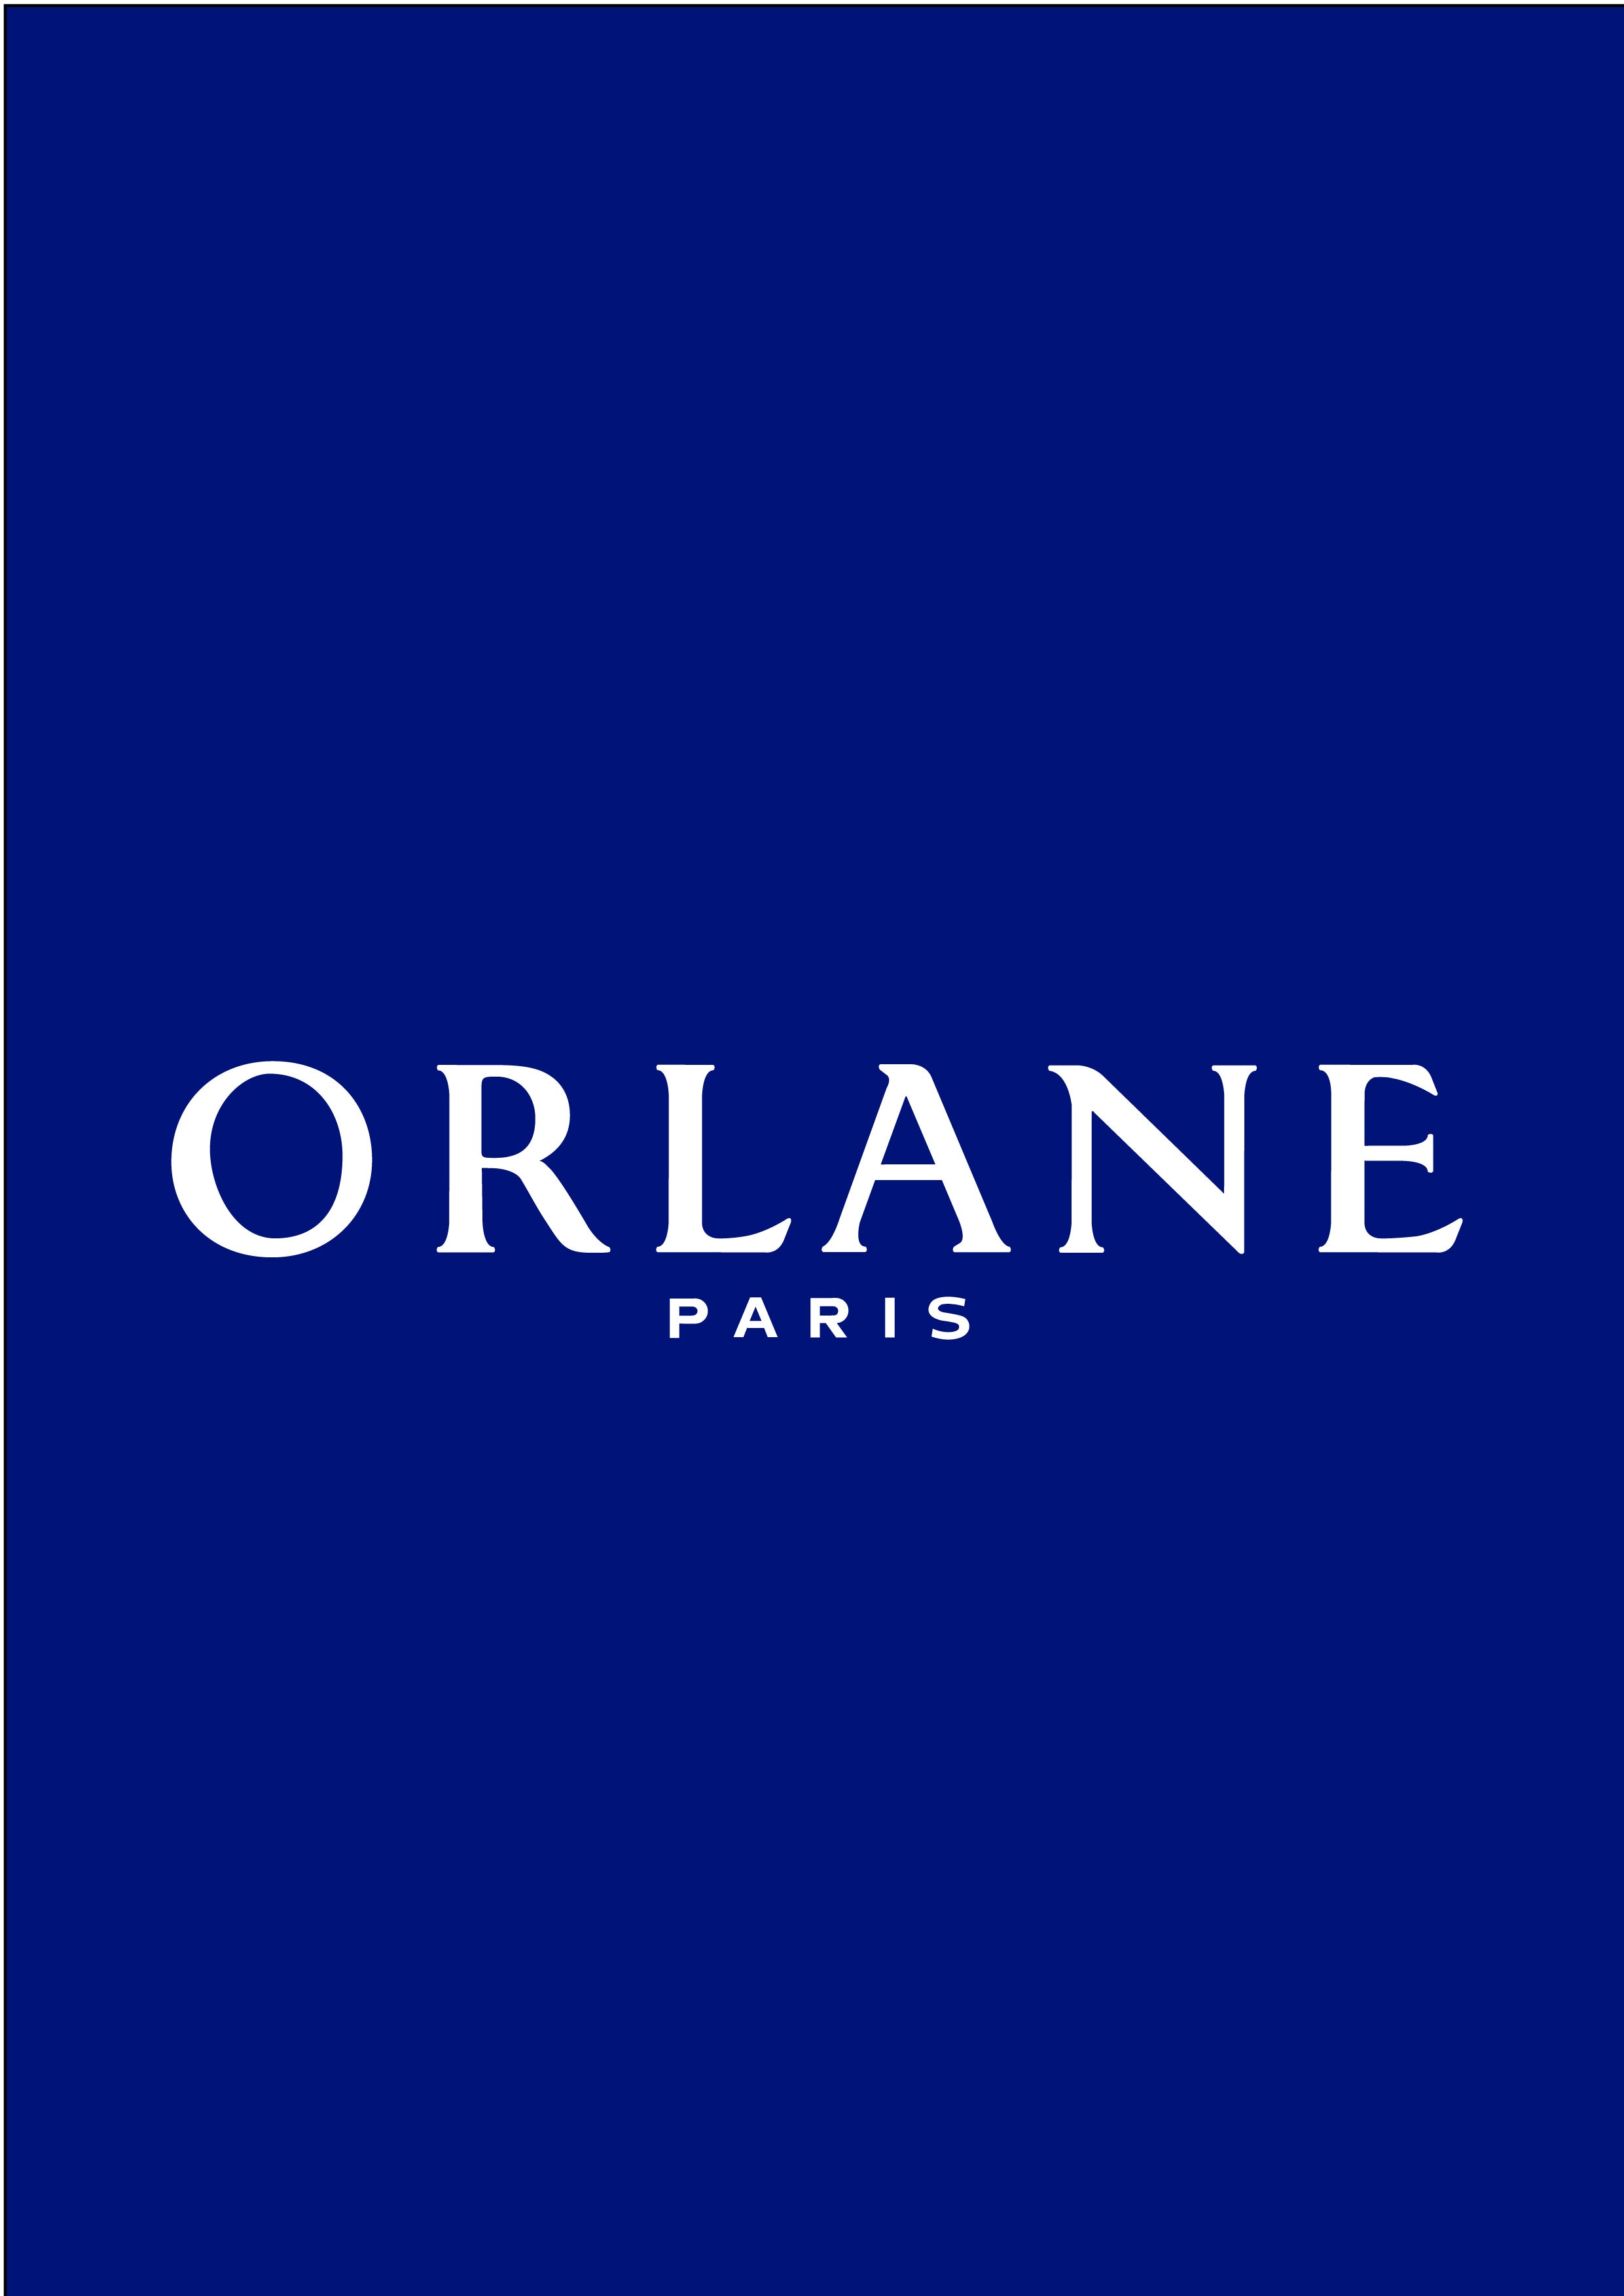 (c) Orlane.com